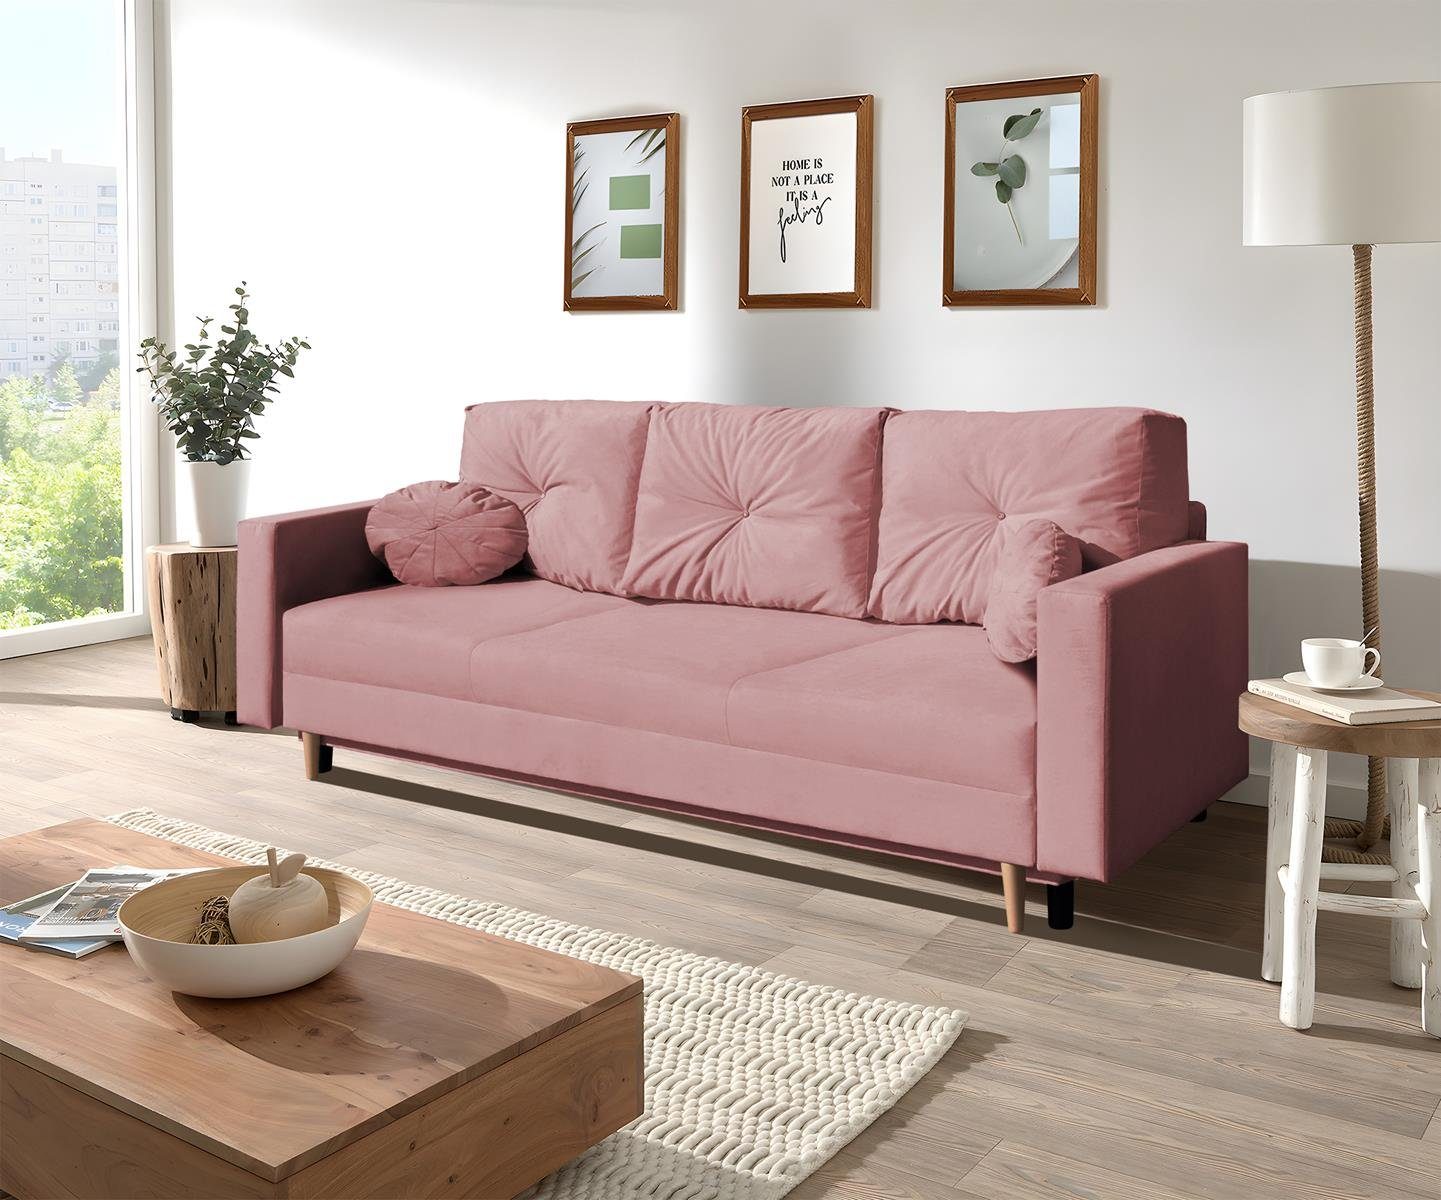 Beautysofa 3-Sitzer MILAN, skandinavisches Design, Wellenunterfederung, Bettkasten, Holzbeine, 3-Sitzer Sofa mit Relaxfunktion Rosa (trinity 23)